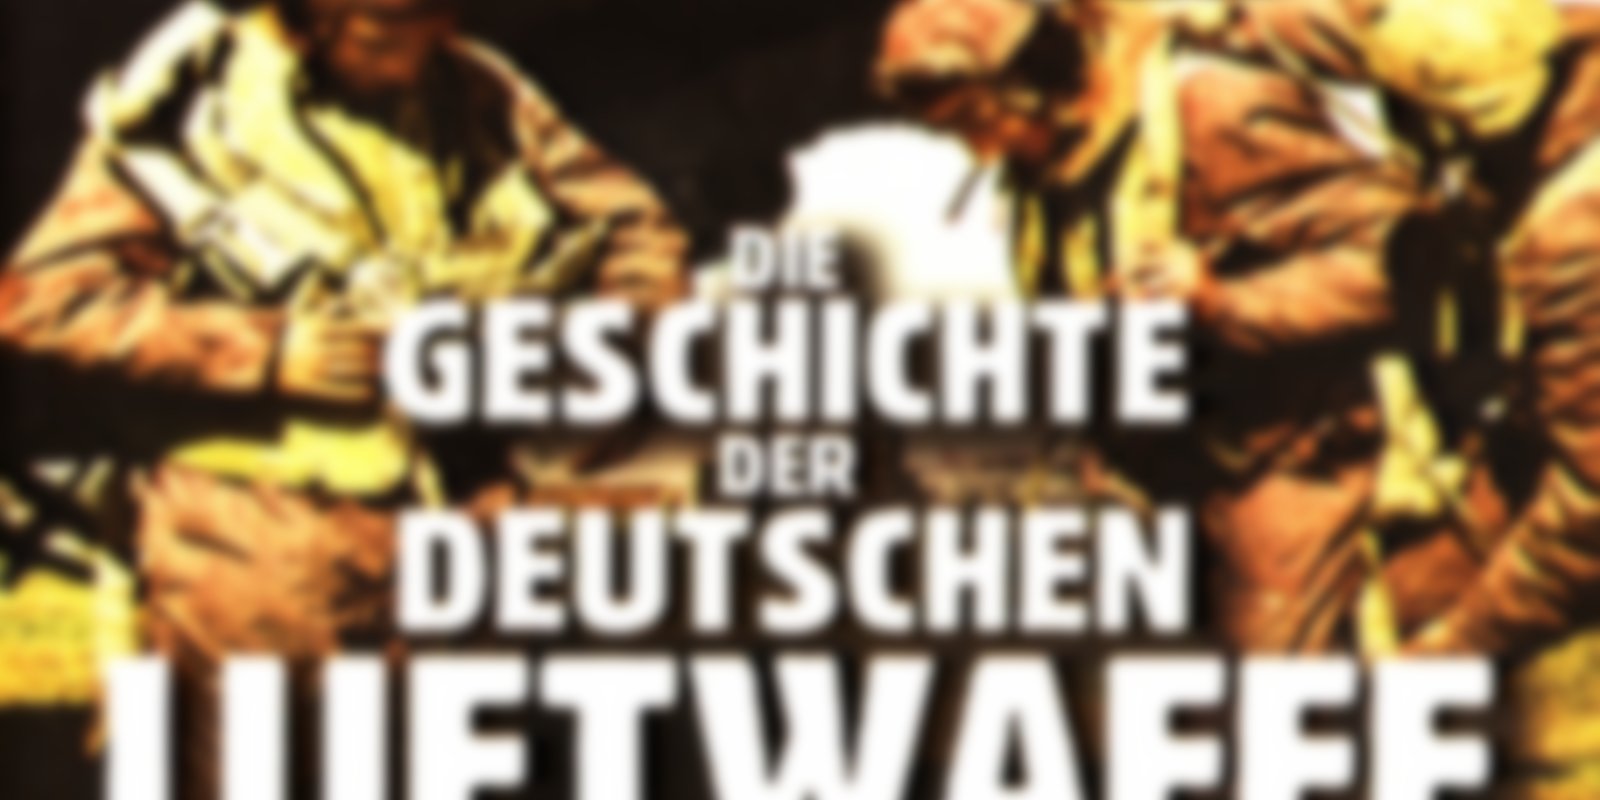 Die Geschichte der Deutschen Luftwaffe 1914-1945